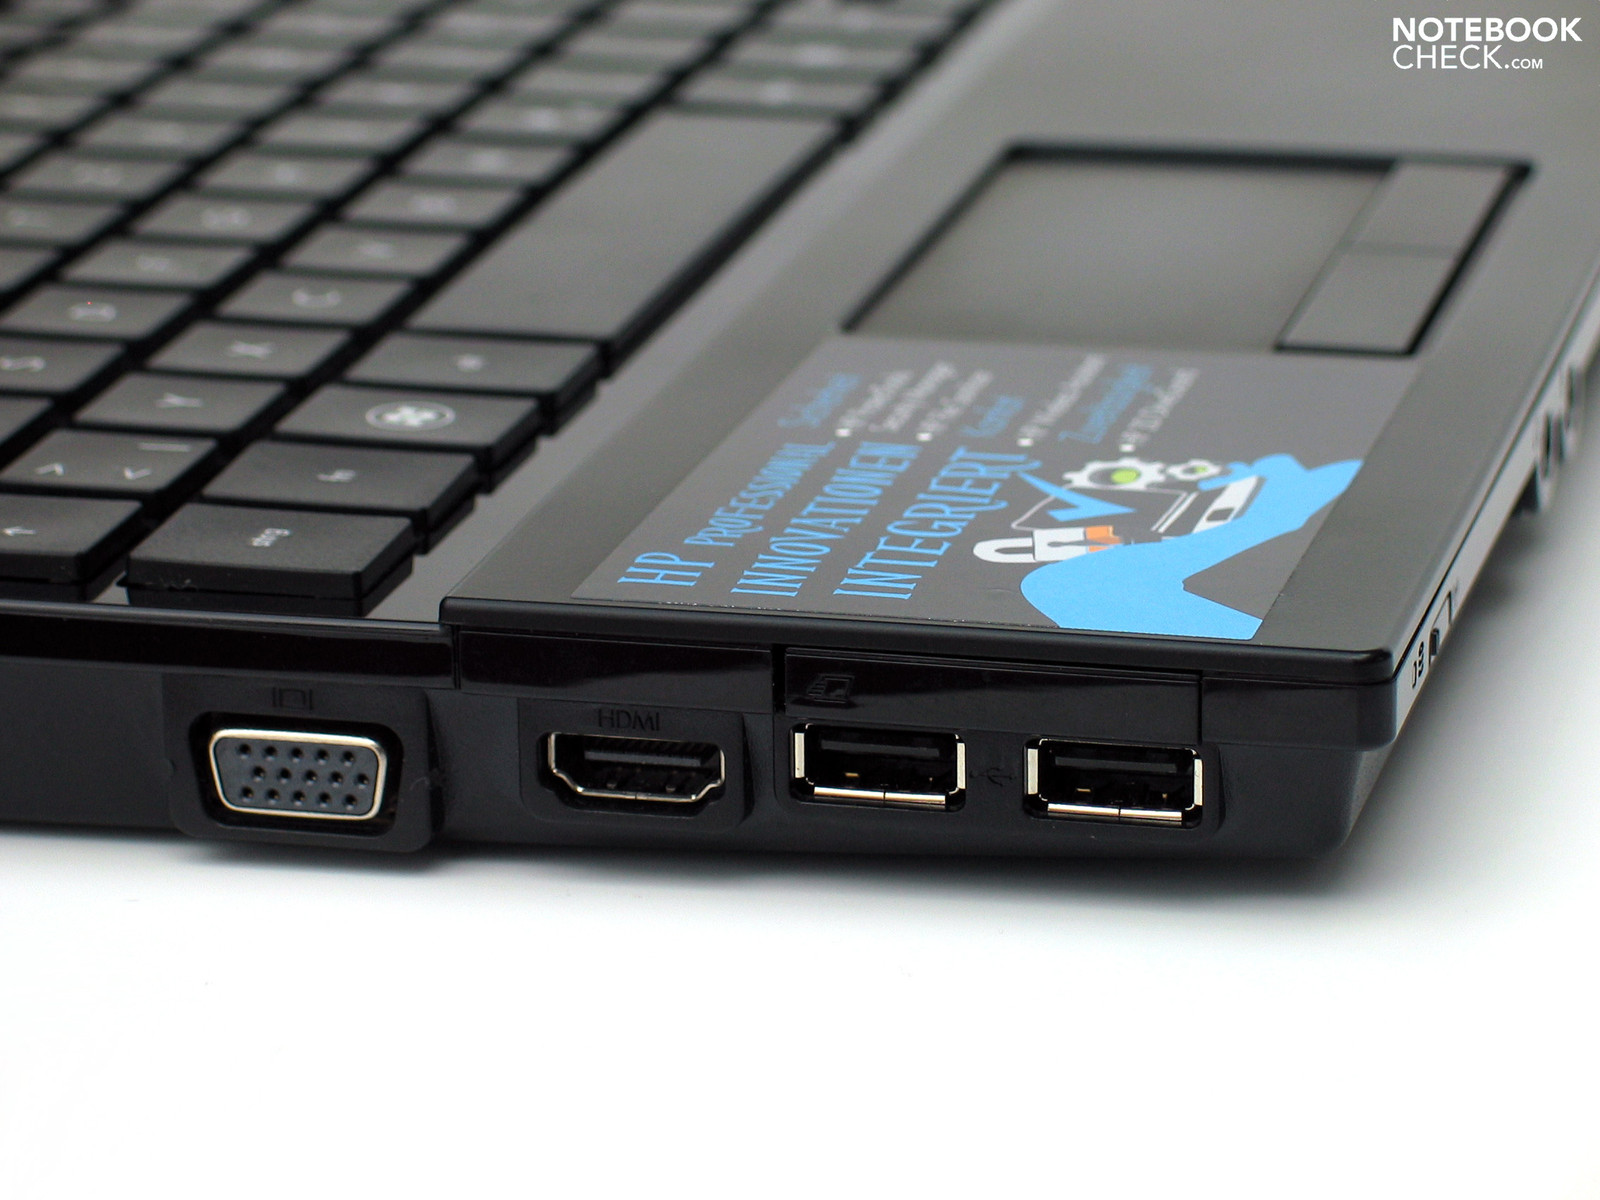 Review HP ProBook 4510s Notebook - NotebookCheck.net Reviews